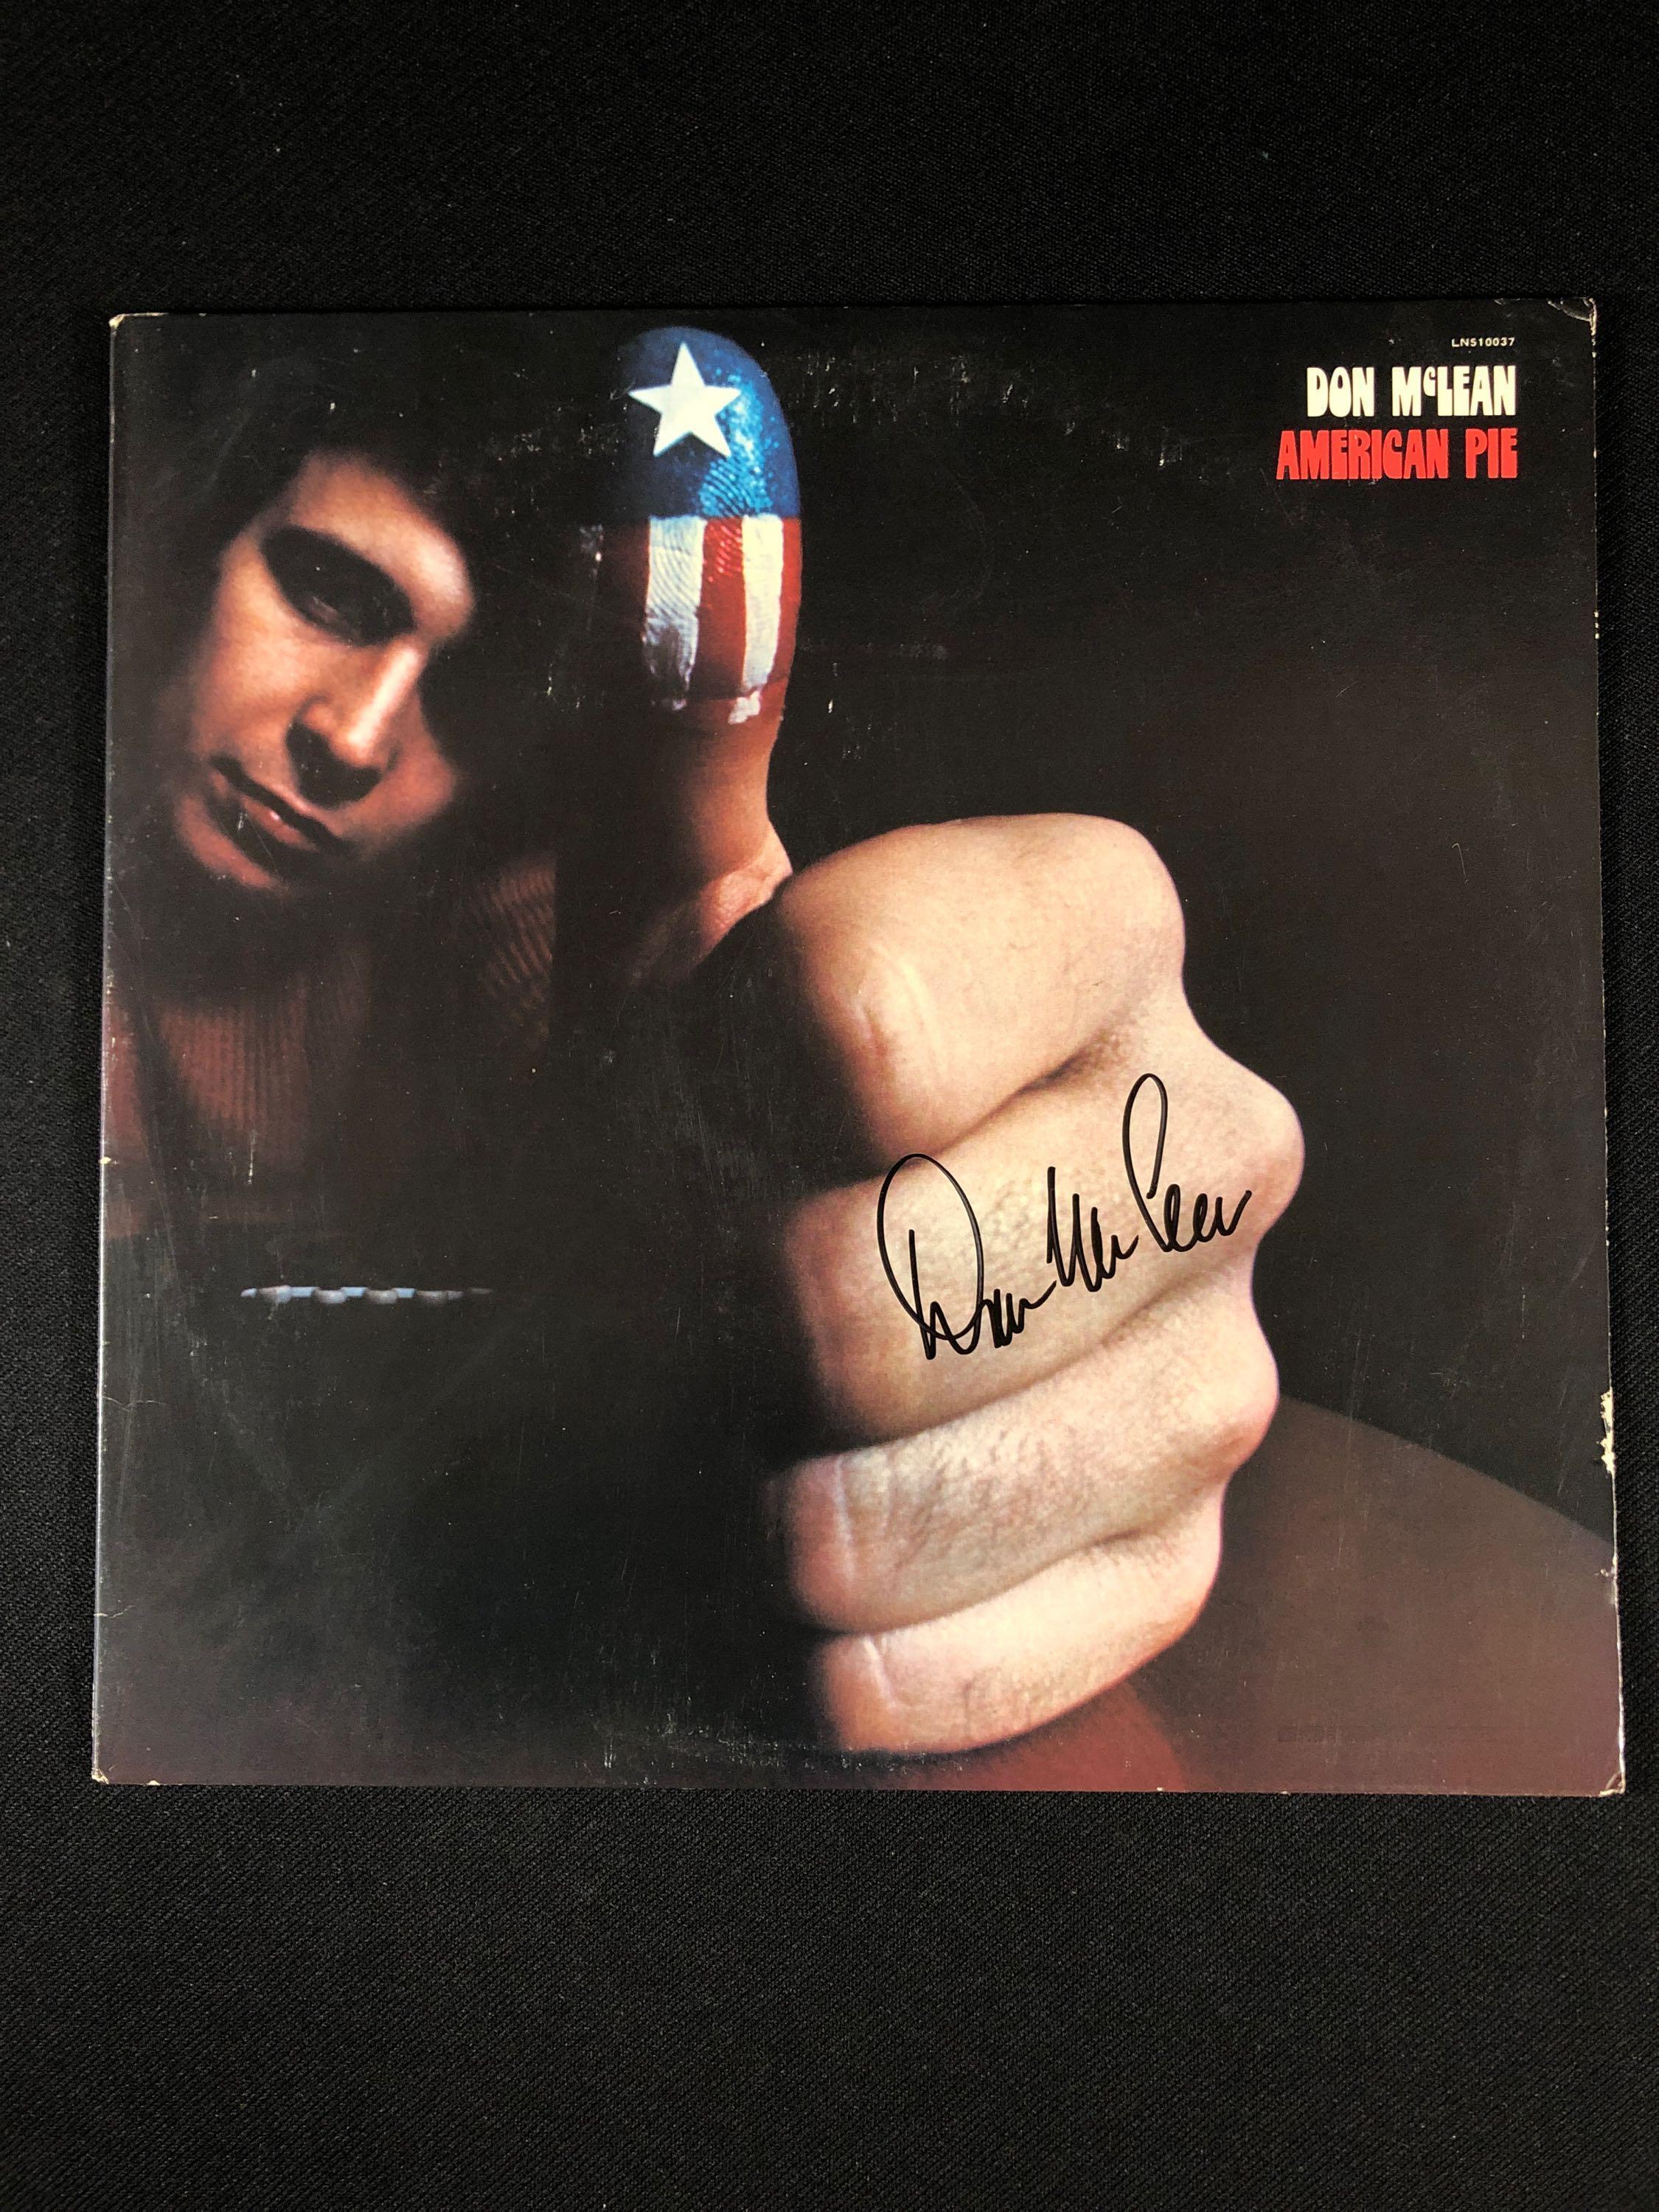 Don McLean "American Pie" Autographed Album